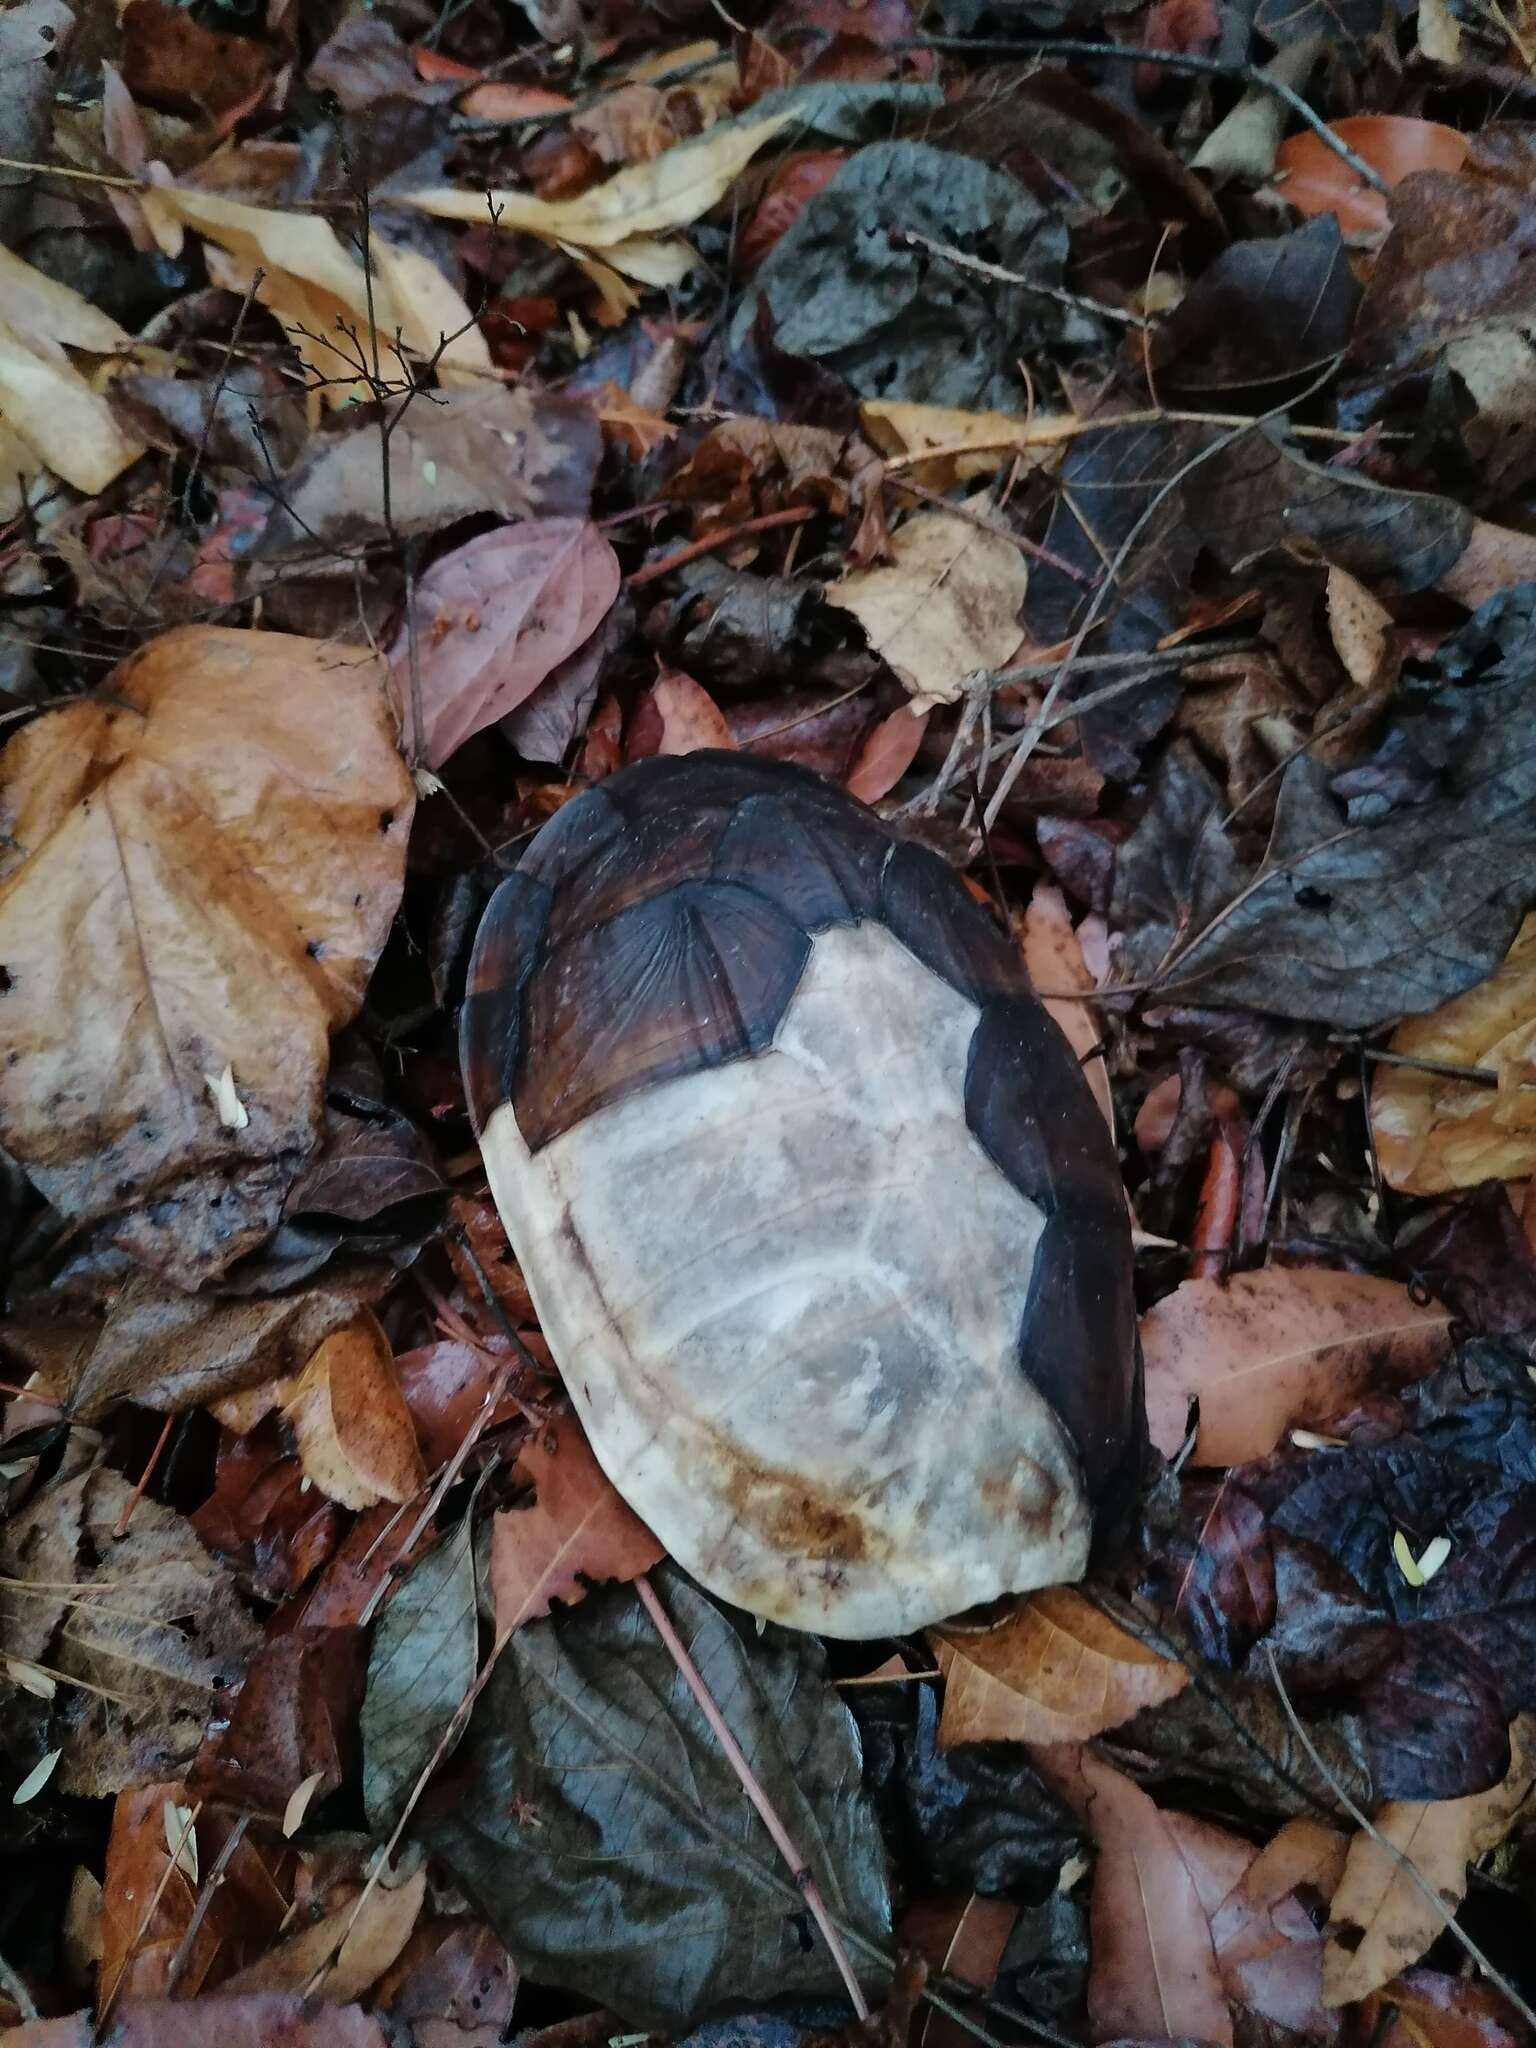 Image of Oaxaca Mud Turtle